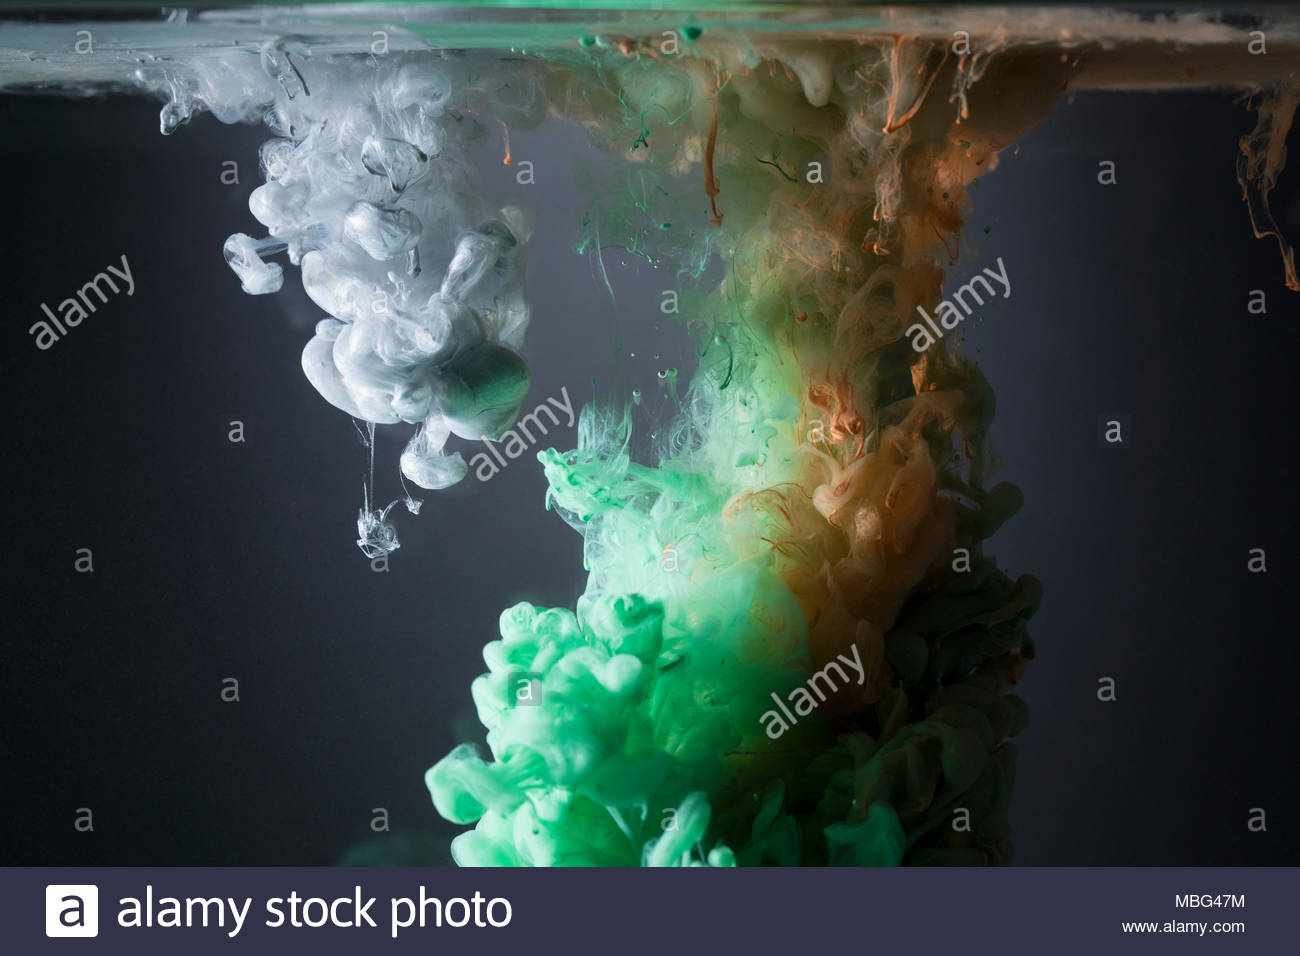 Creative green, orange and white liquid blending underwater Stock Photo